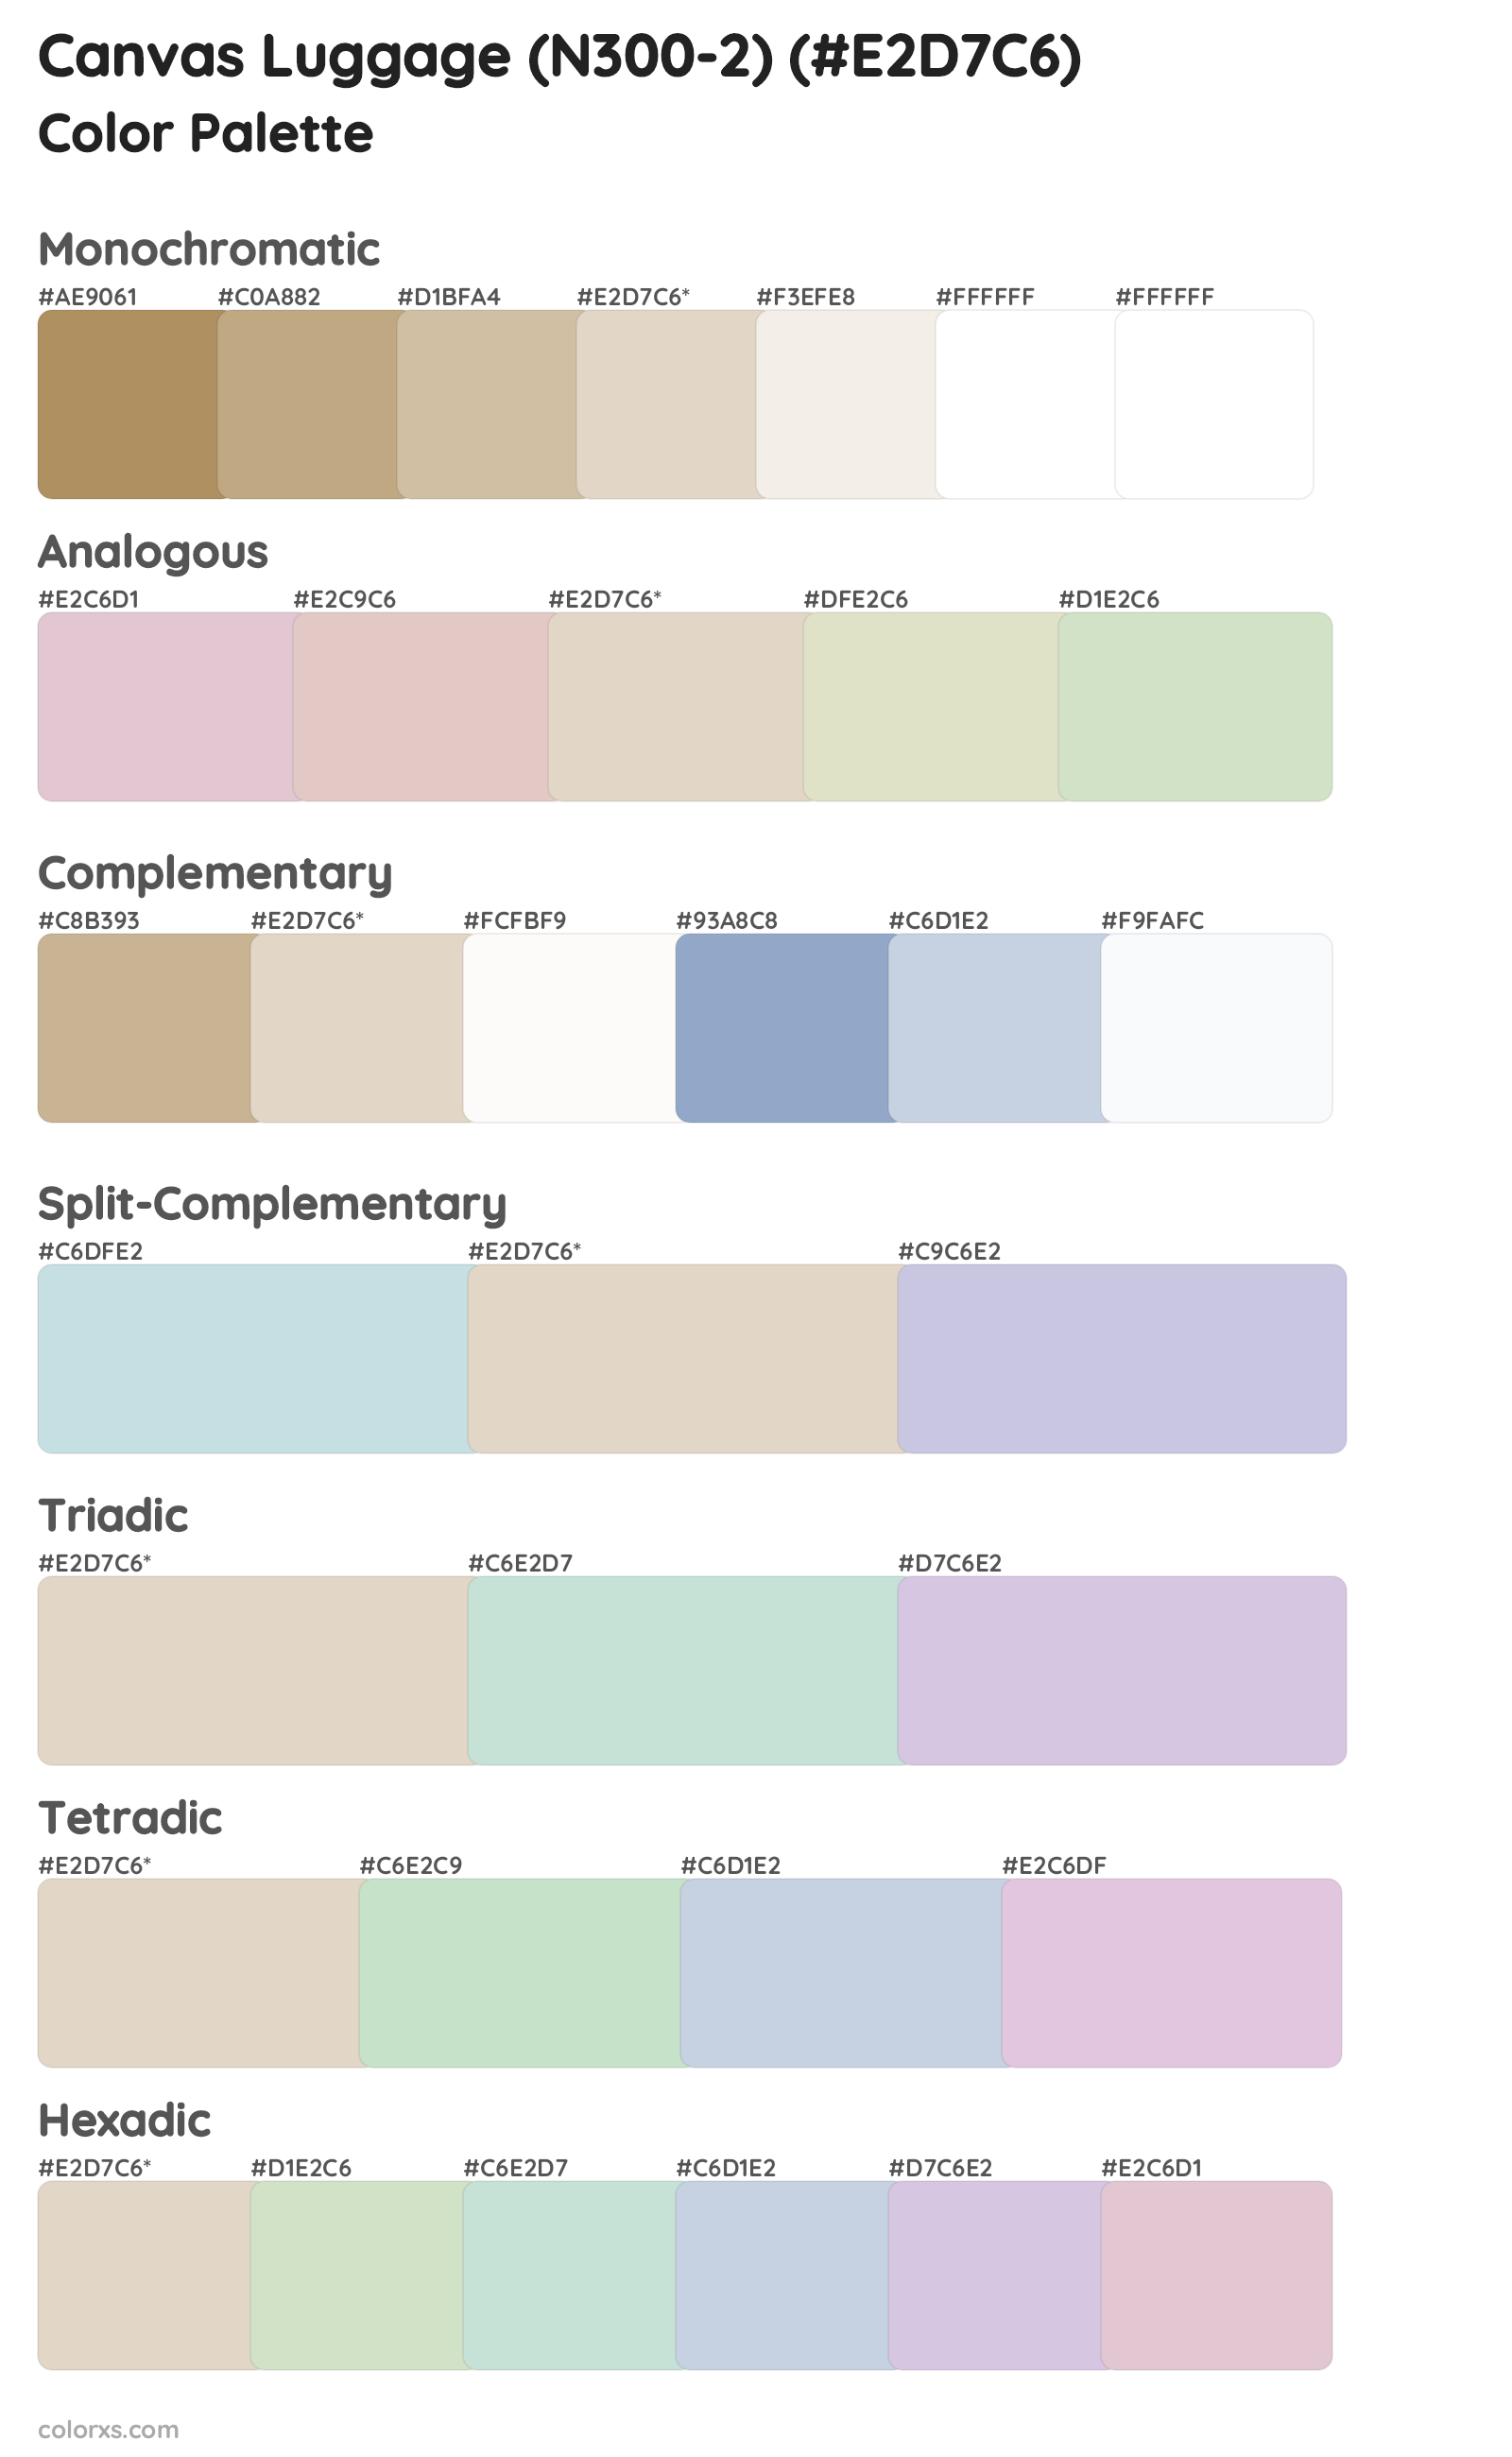 Canvas Luggage (N300-2) Color Scheme Palettes